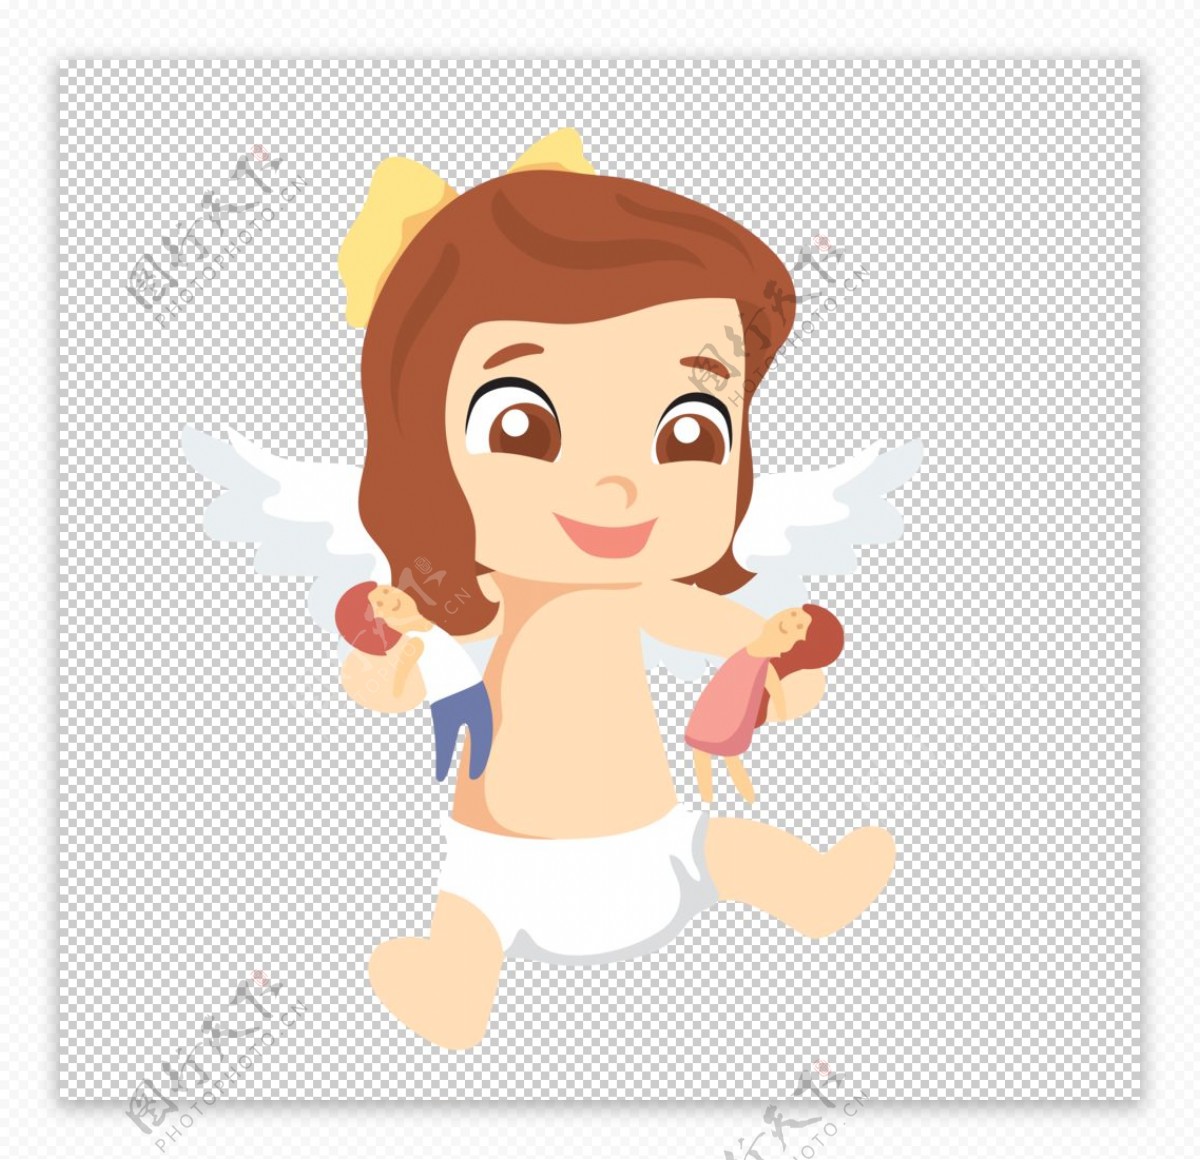 可爱的小天使图片素材-编号13947455-图行天下